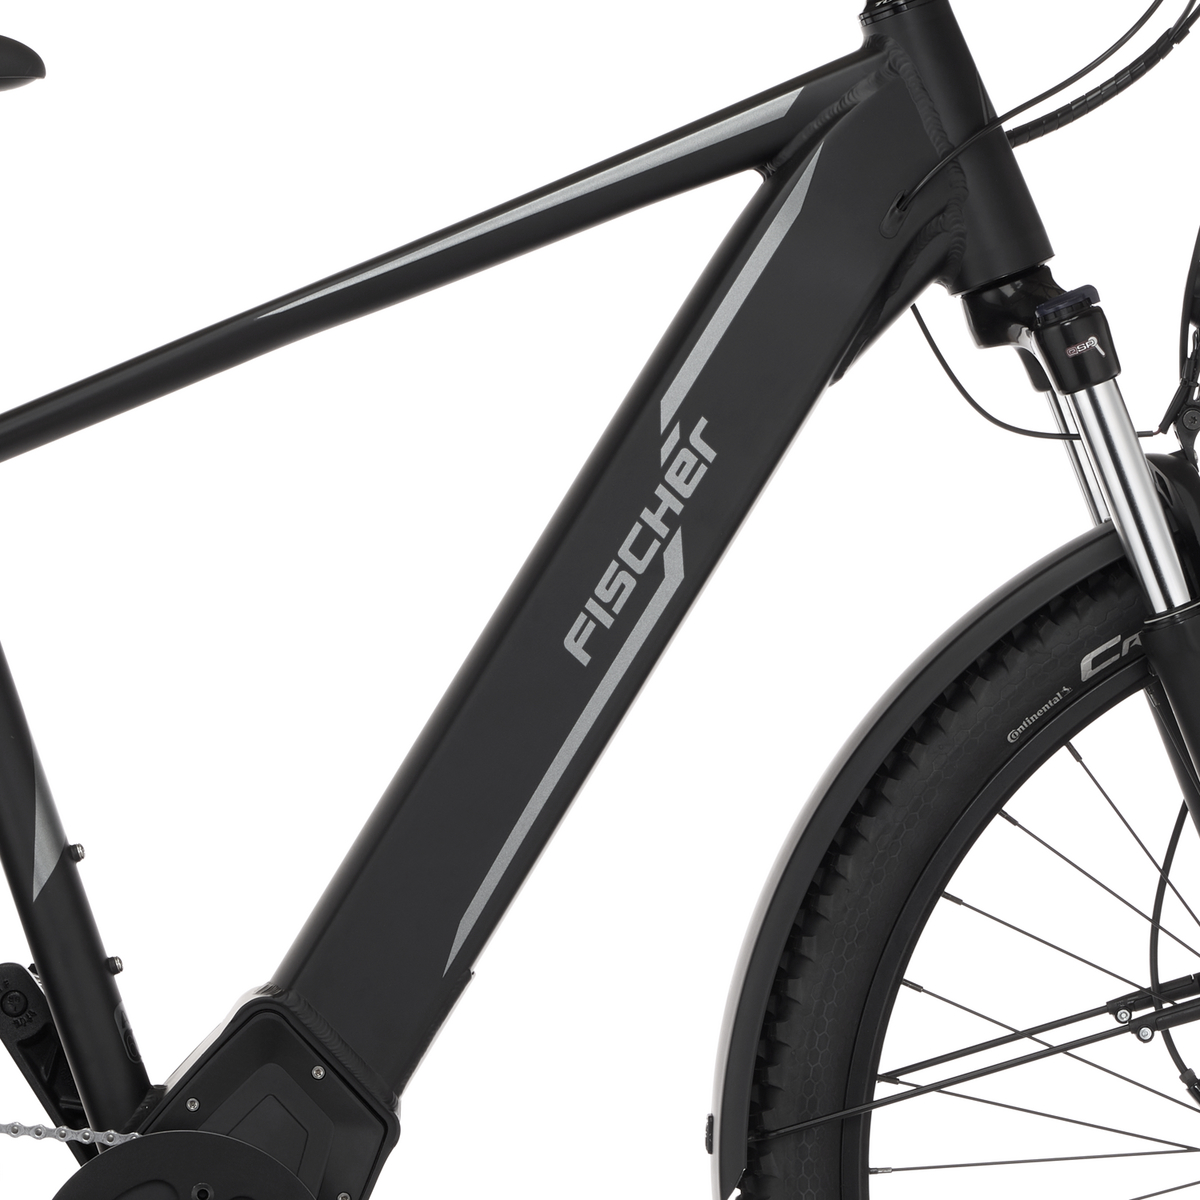 FISCHER All Terrain E-Bike Terra 8.0i - schwarz, RH 55 cm, 29 Zoll